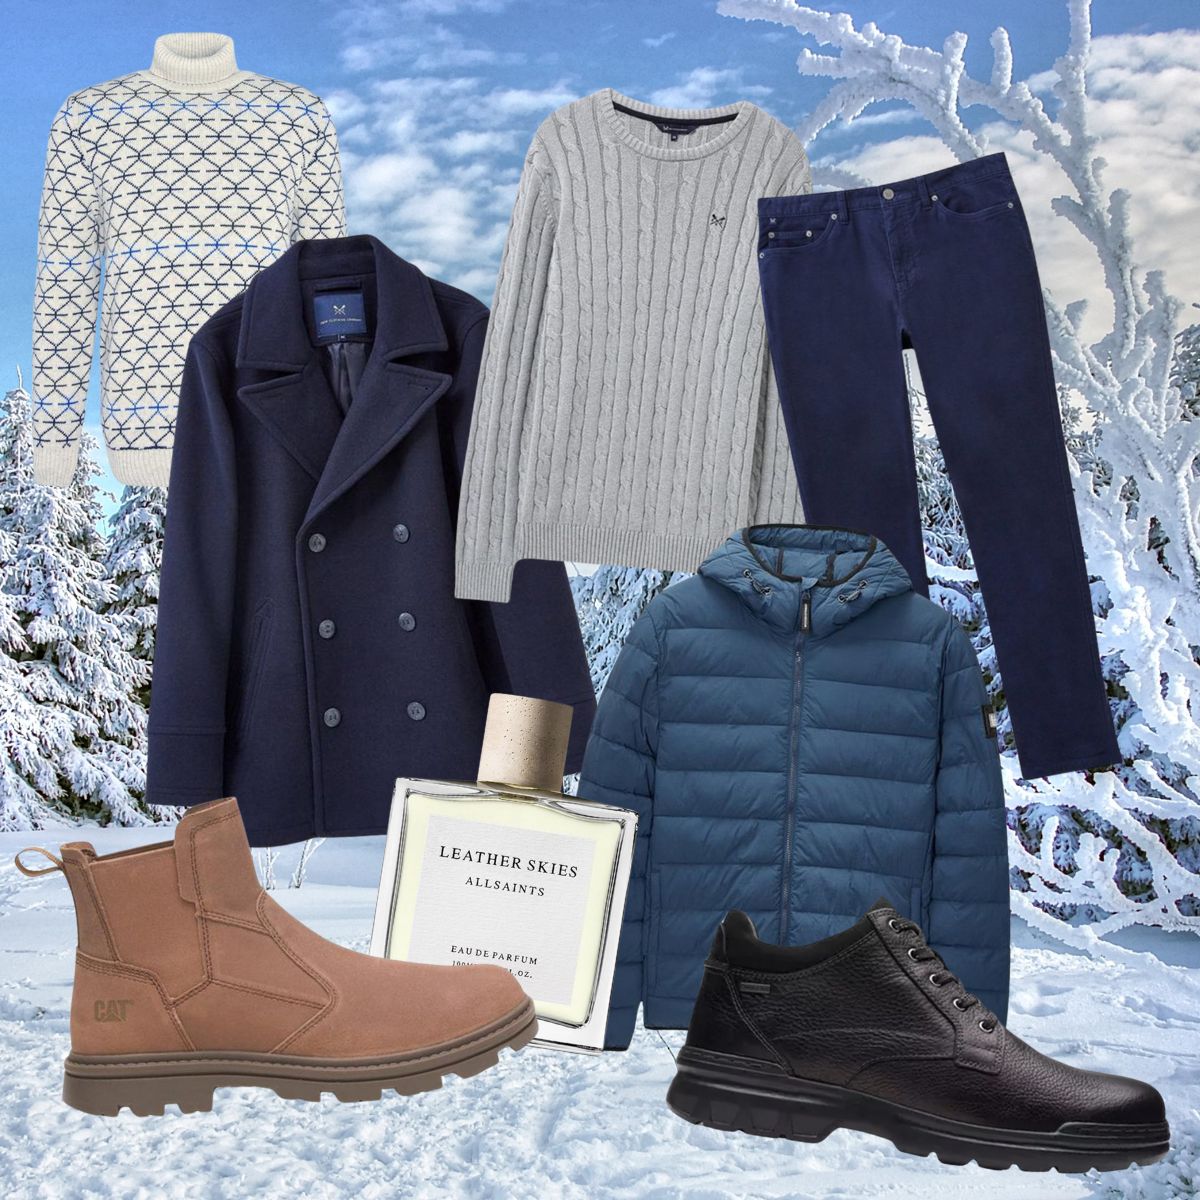 Winter Wardrobe Must-Haves for Men